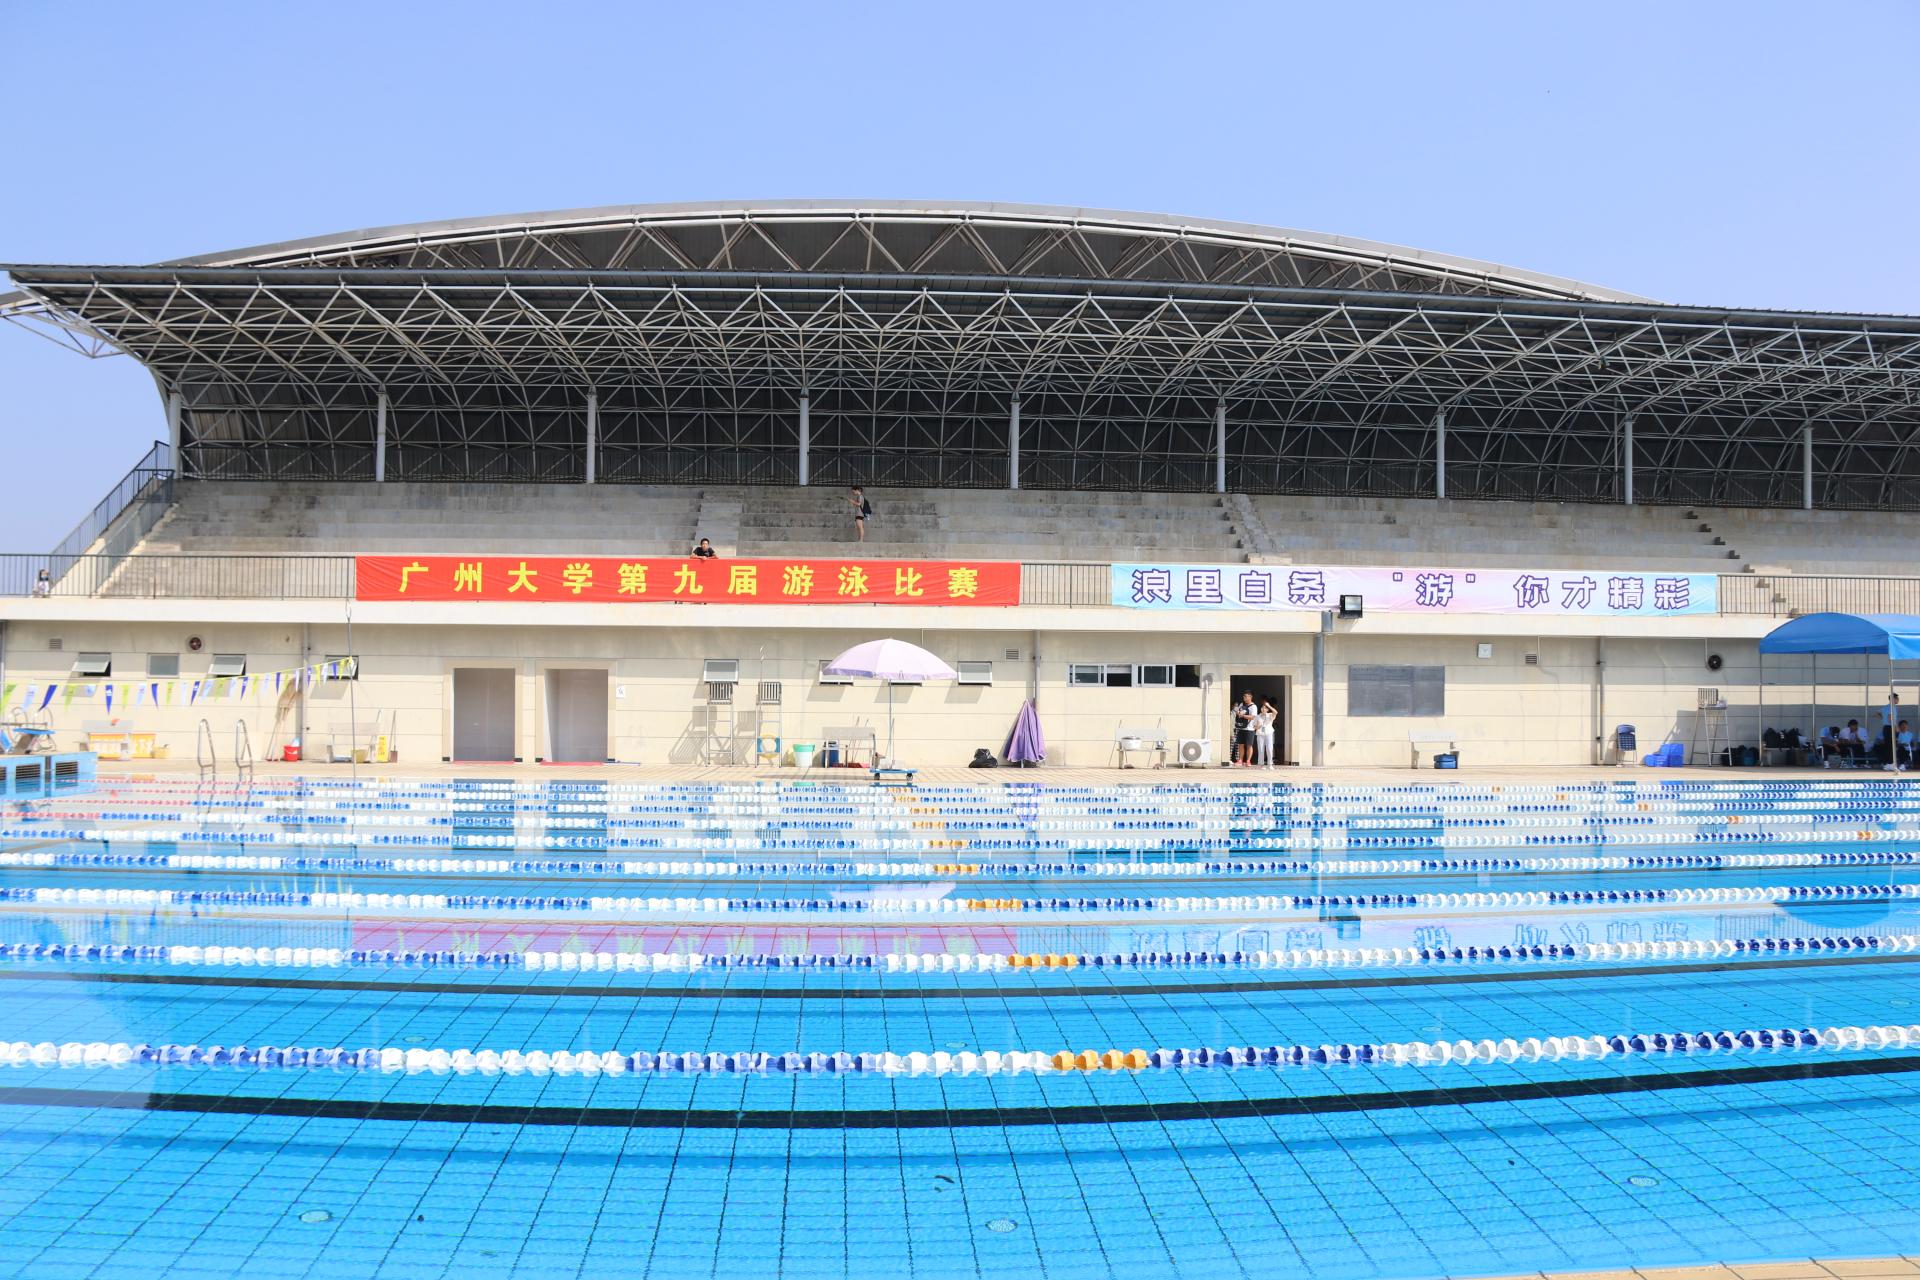 大型游泳馆游泳池效果展示-广州夏泳泳池设备有限公司